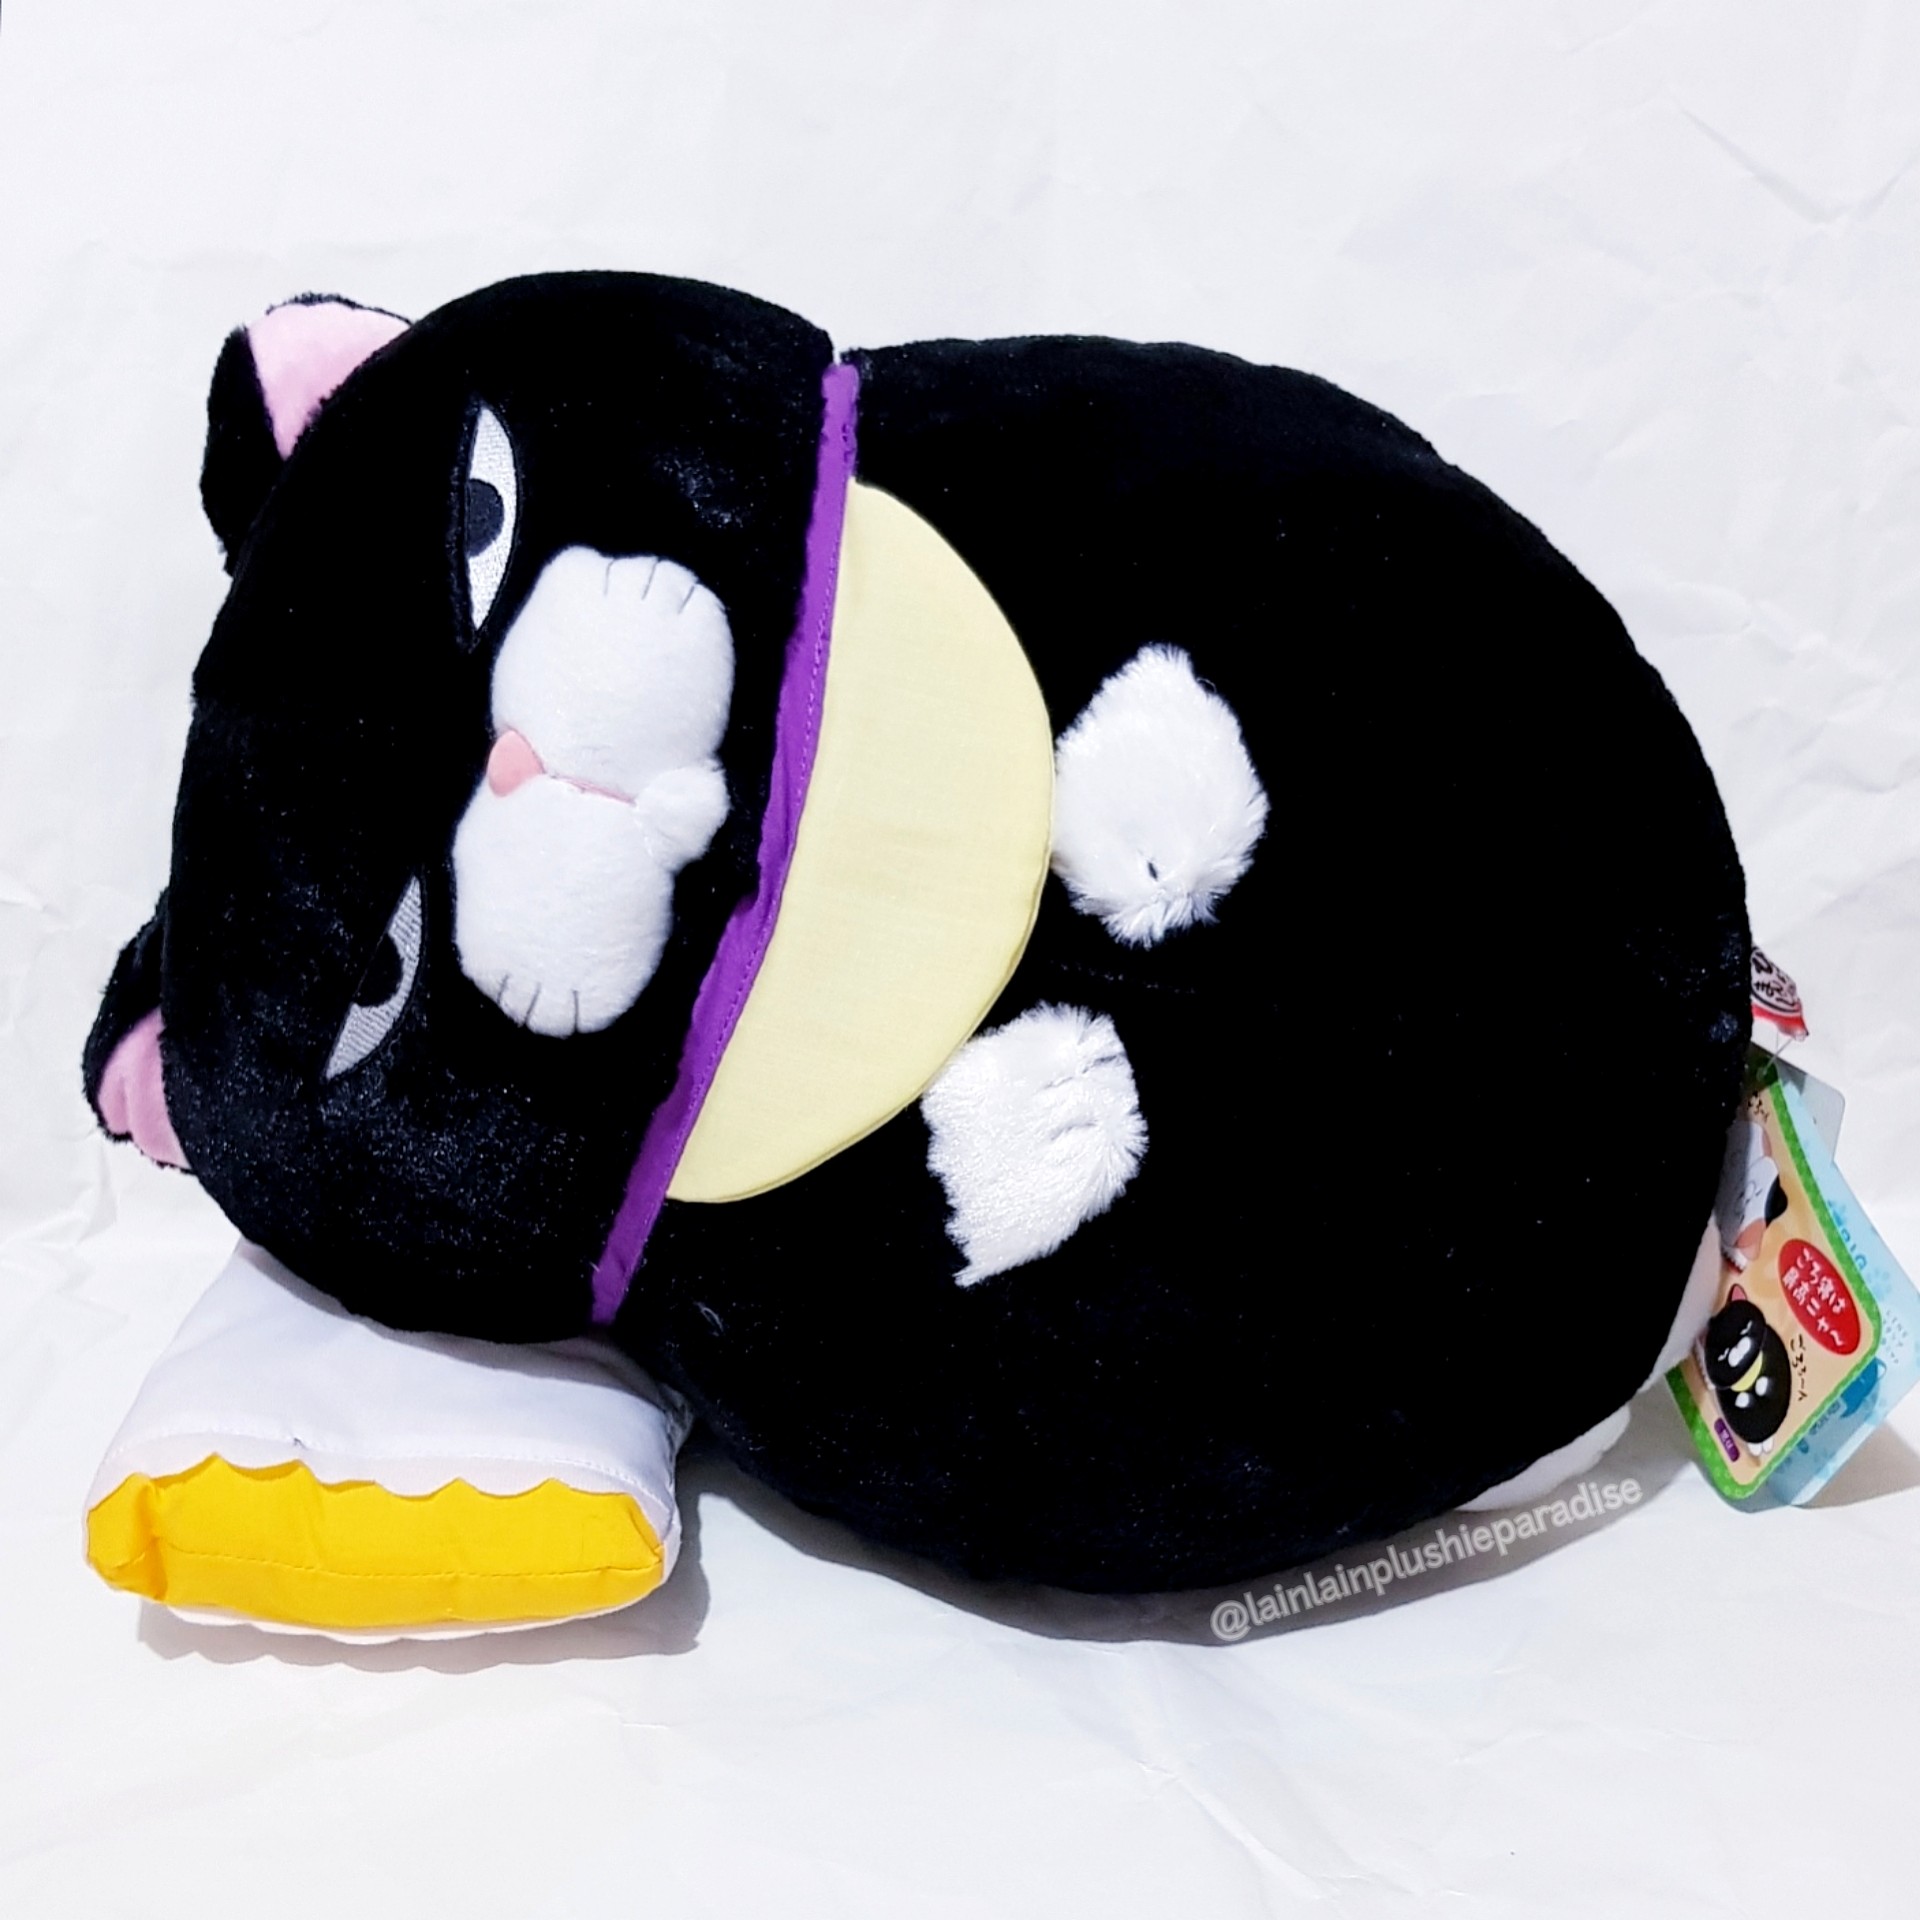 fat black cat stuffed animal